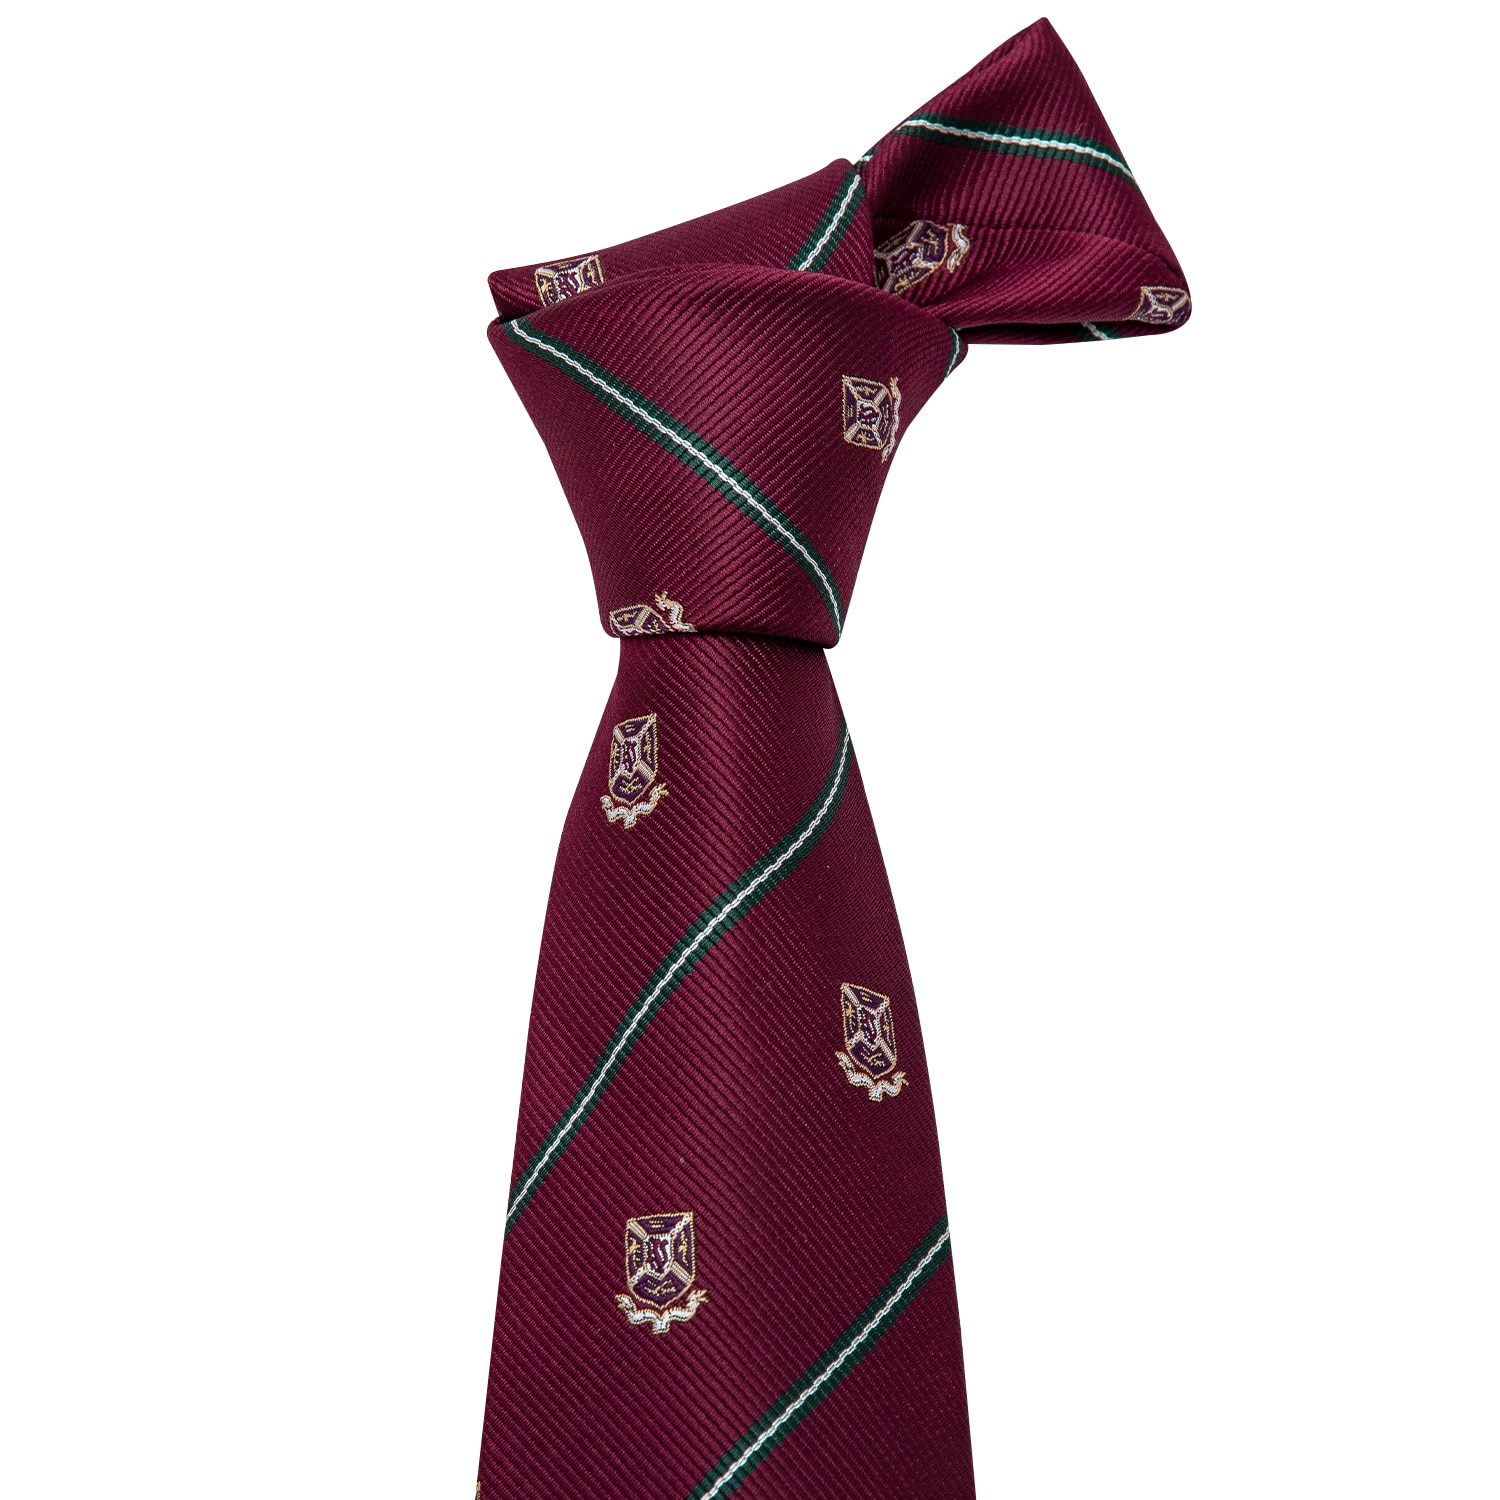 Men's Ties Silk Woven Necktie, Hanky, Cufflinks Set